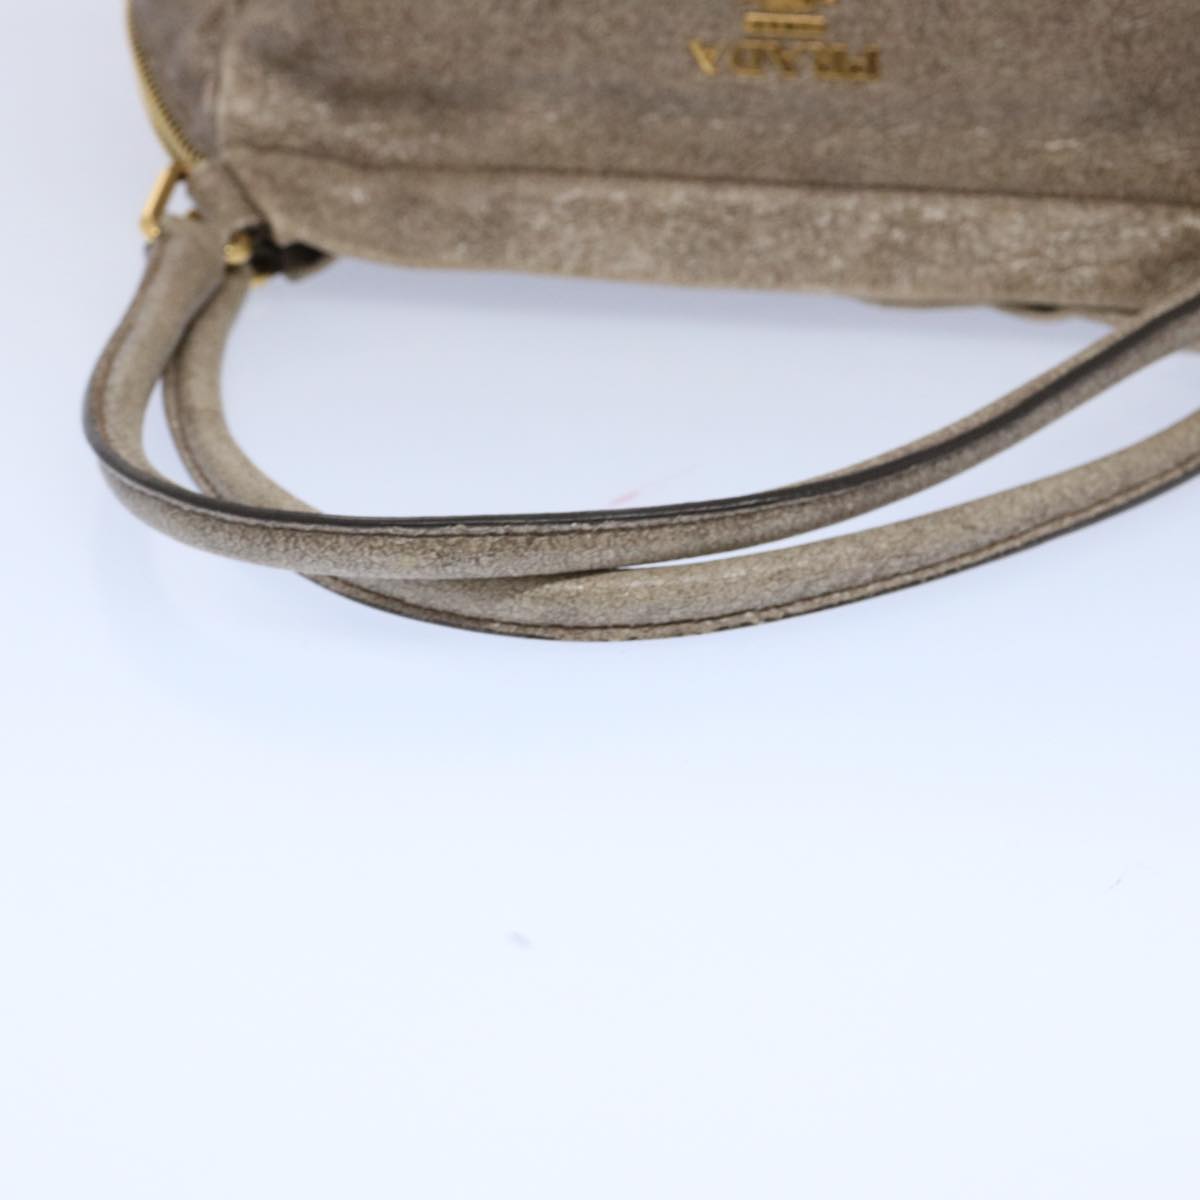 PRADA Tote Bag Leather Beige Auth 61880